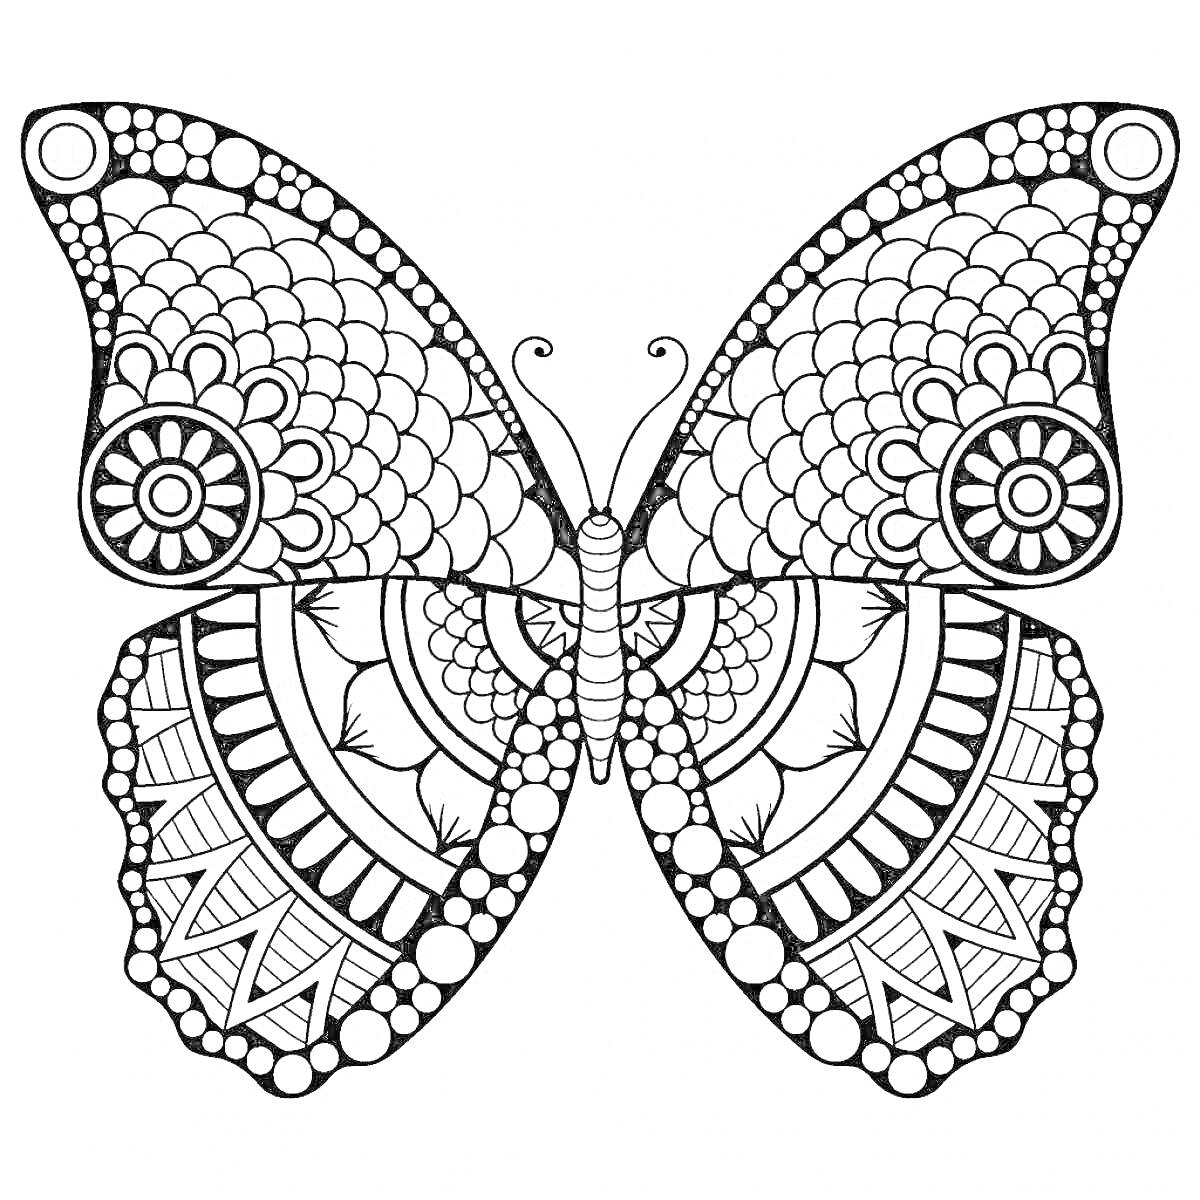 Раскраска Бабочка с орнаментом: кружки, линии и цветочные узоры